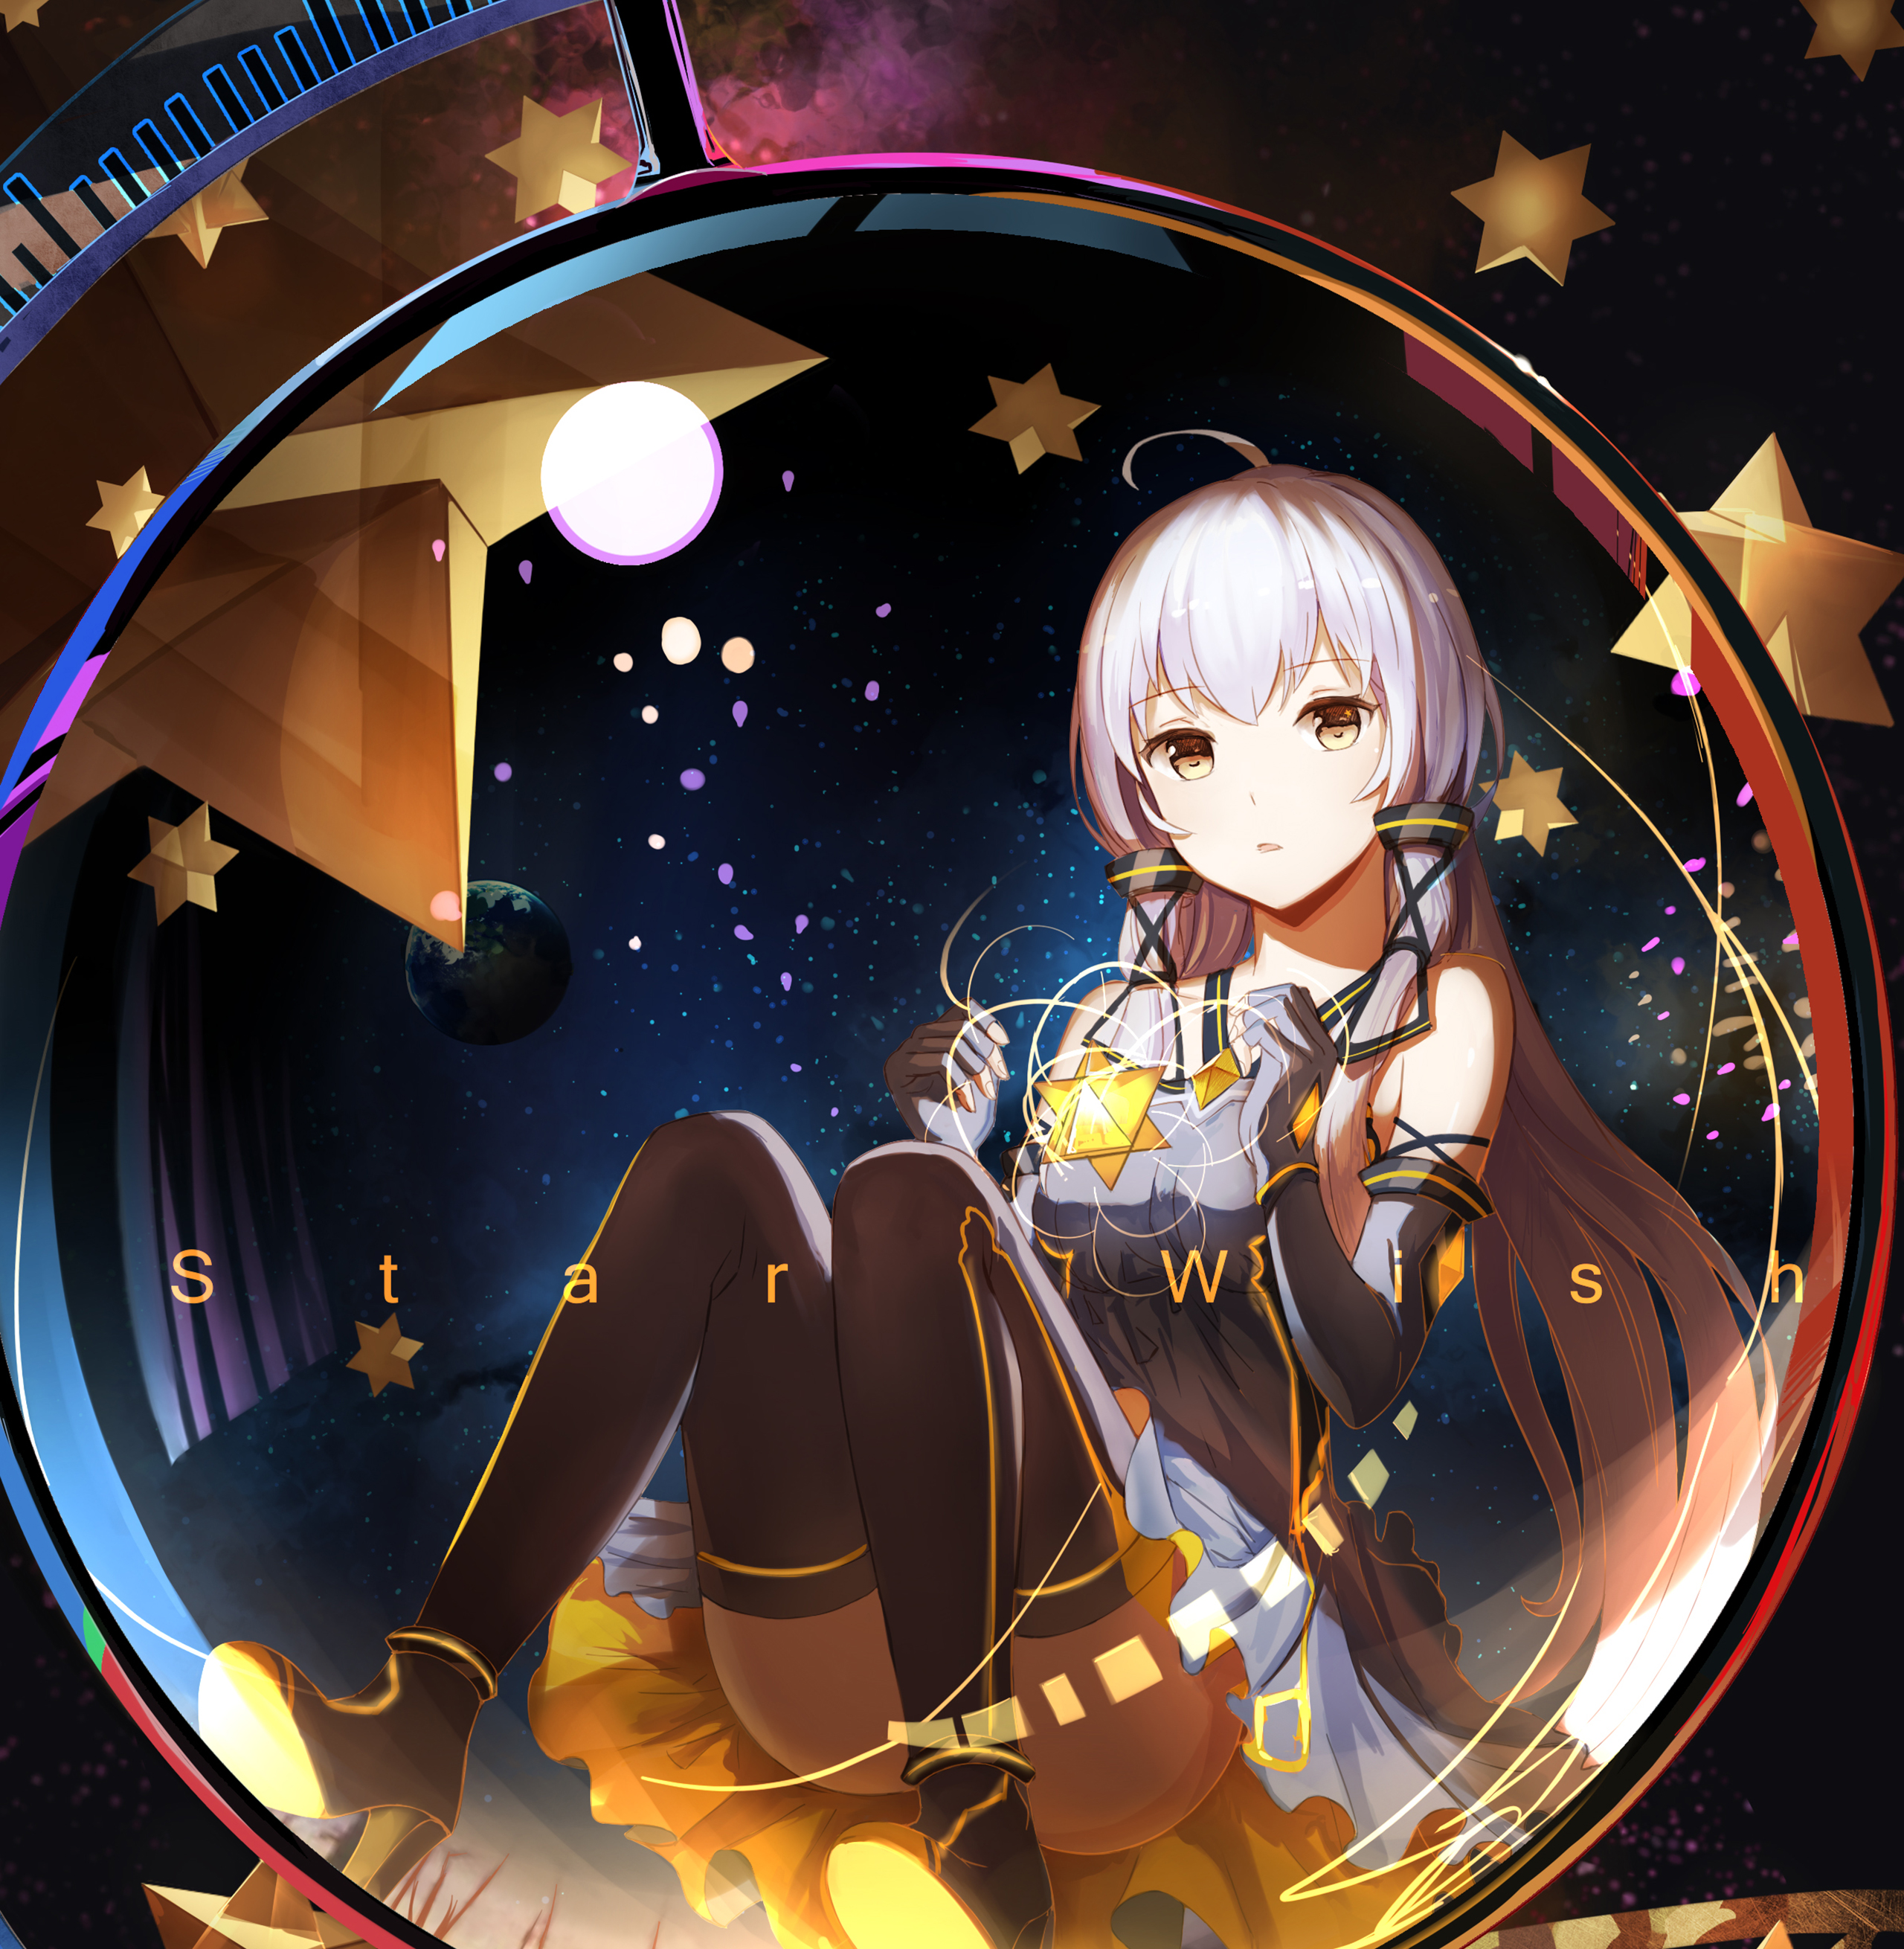 Anime Girl With Magic - HD Wallpaper 